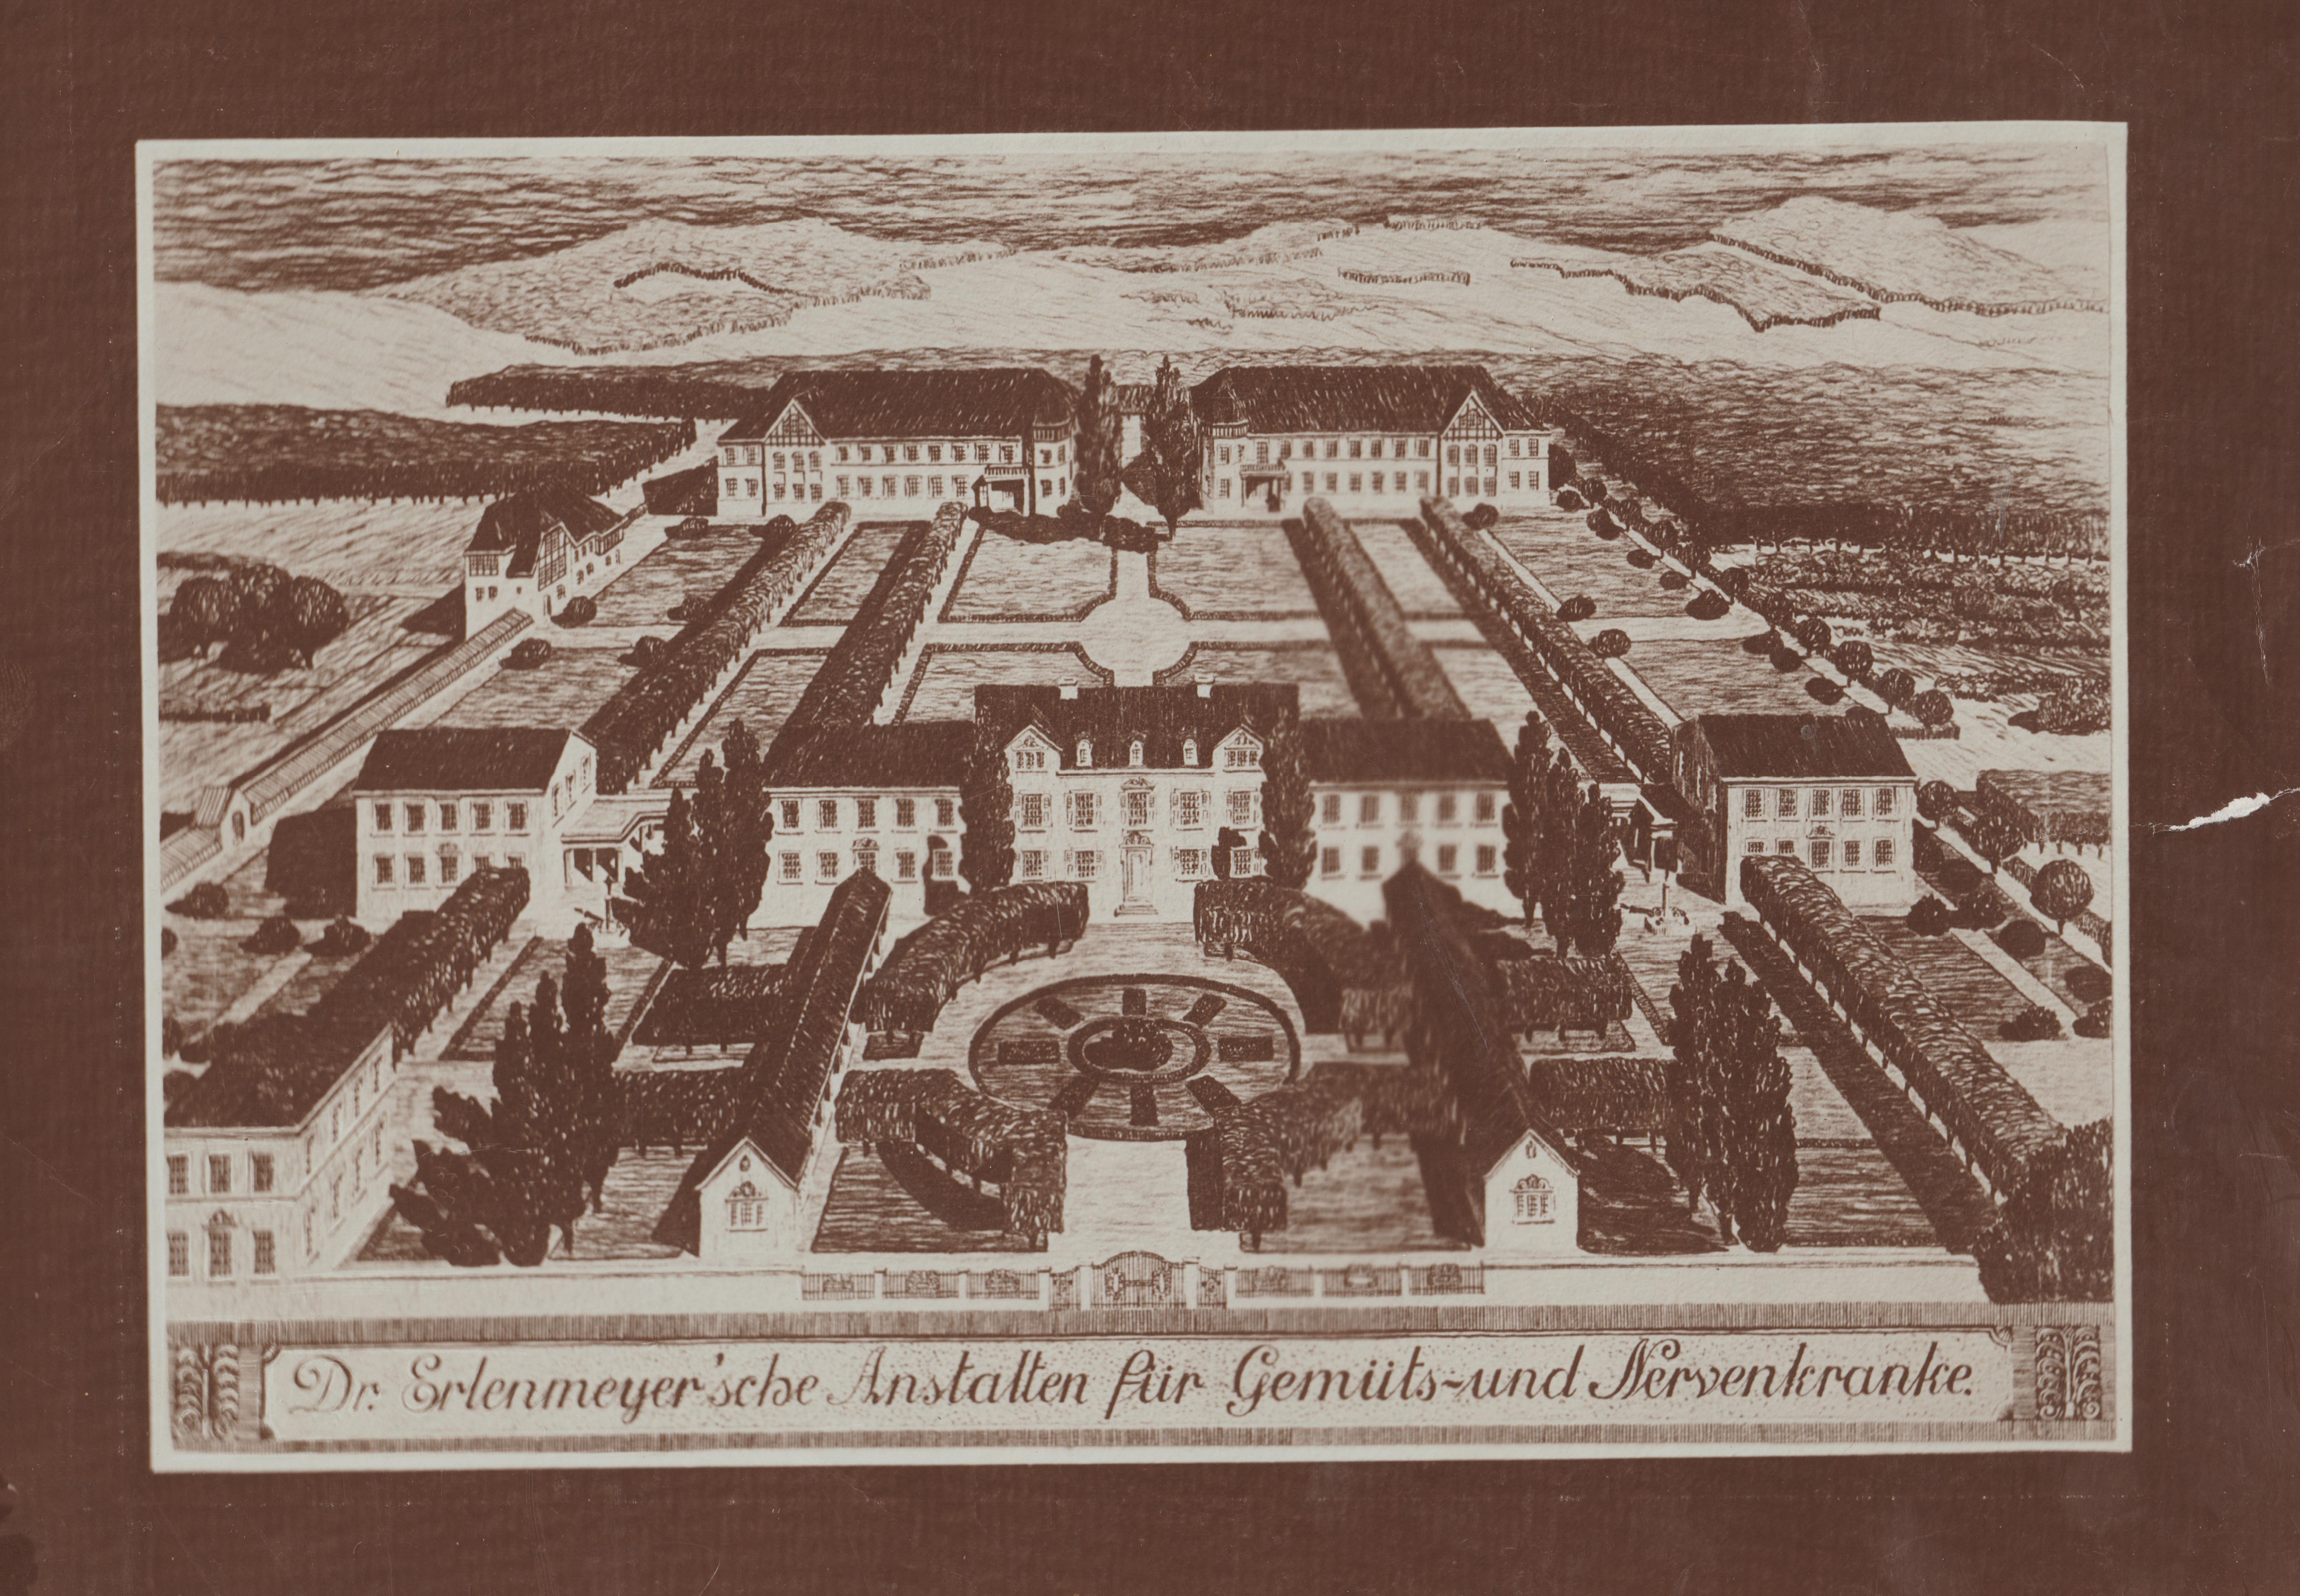 Dr. Erlenmeyer’sche Anstalten für Gemüts- und Nervenkranke, Bendorf am Rhein (REM CC BY-NC-SA)